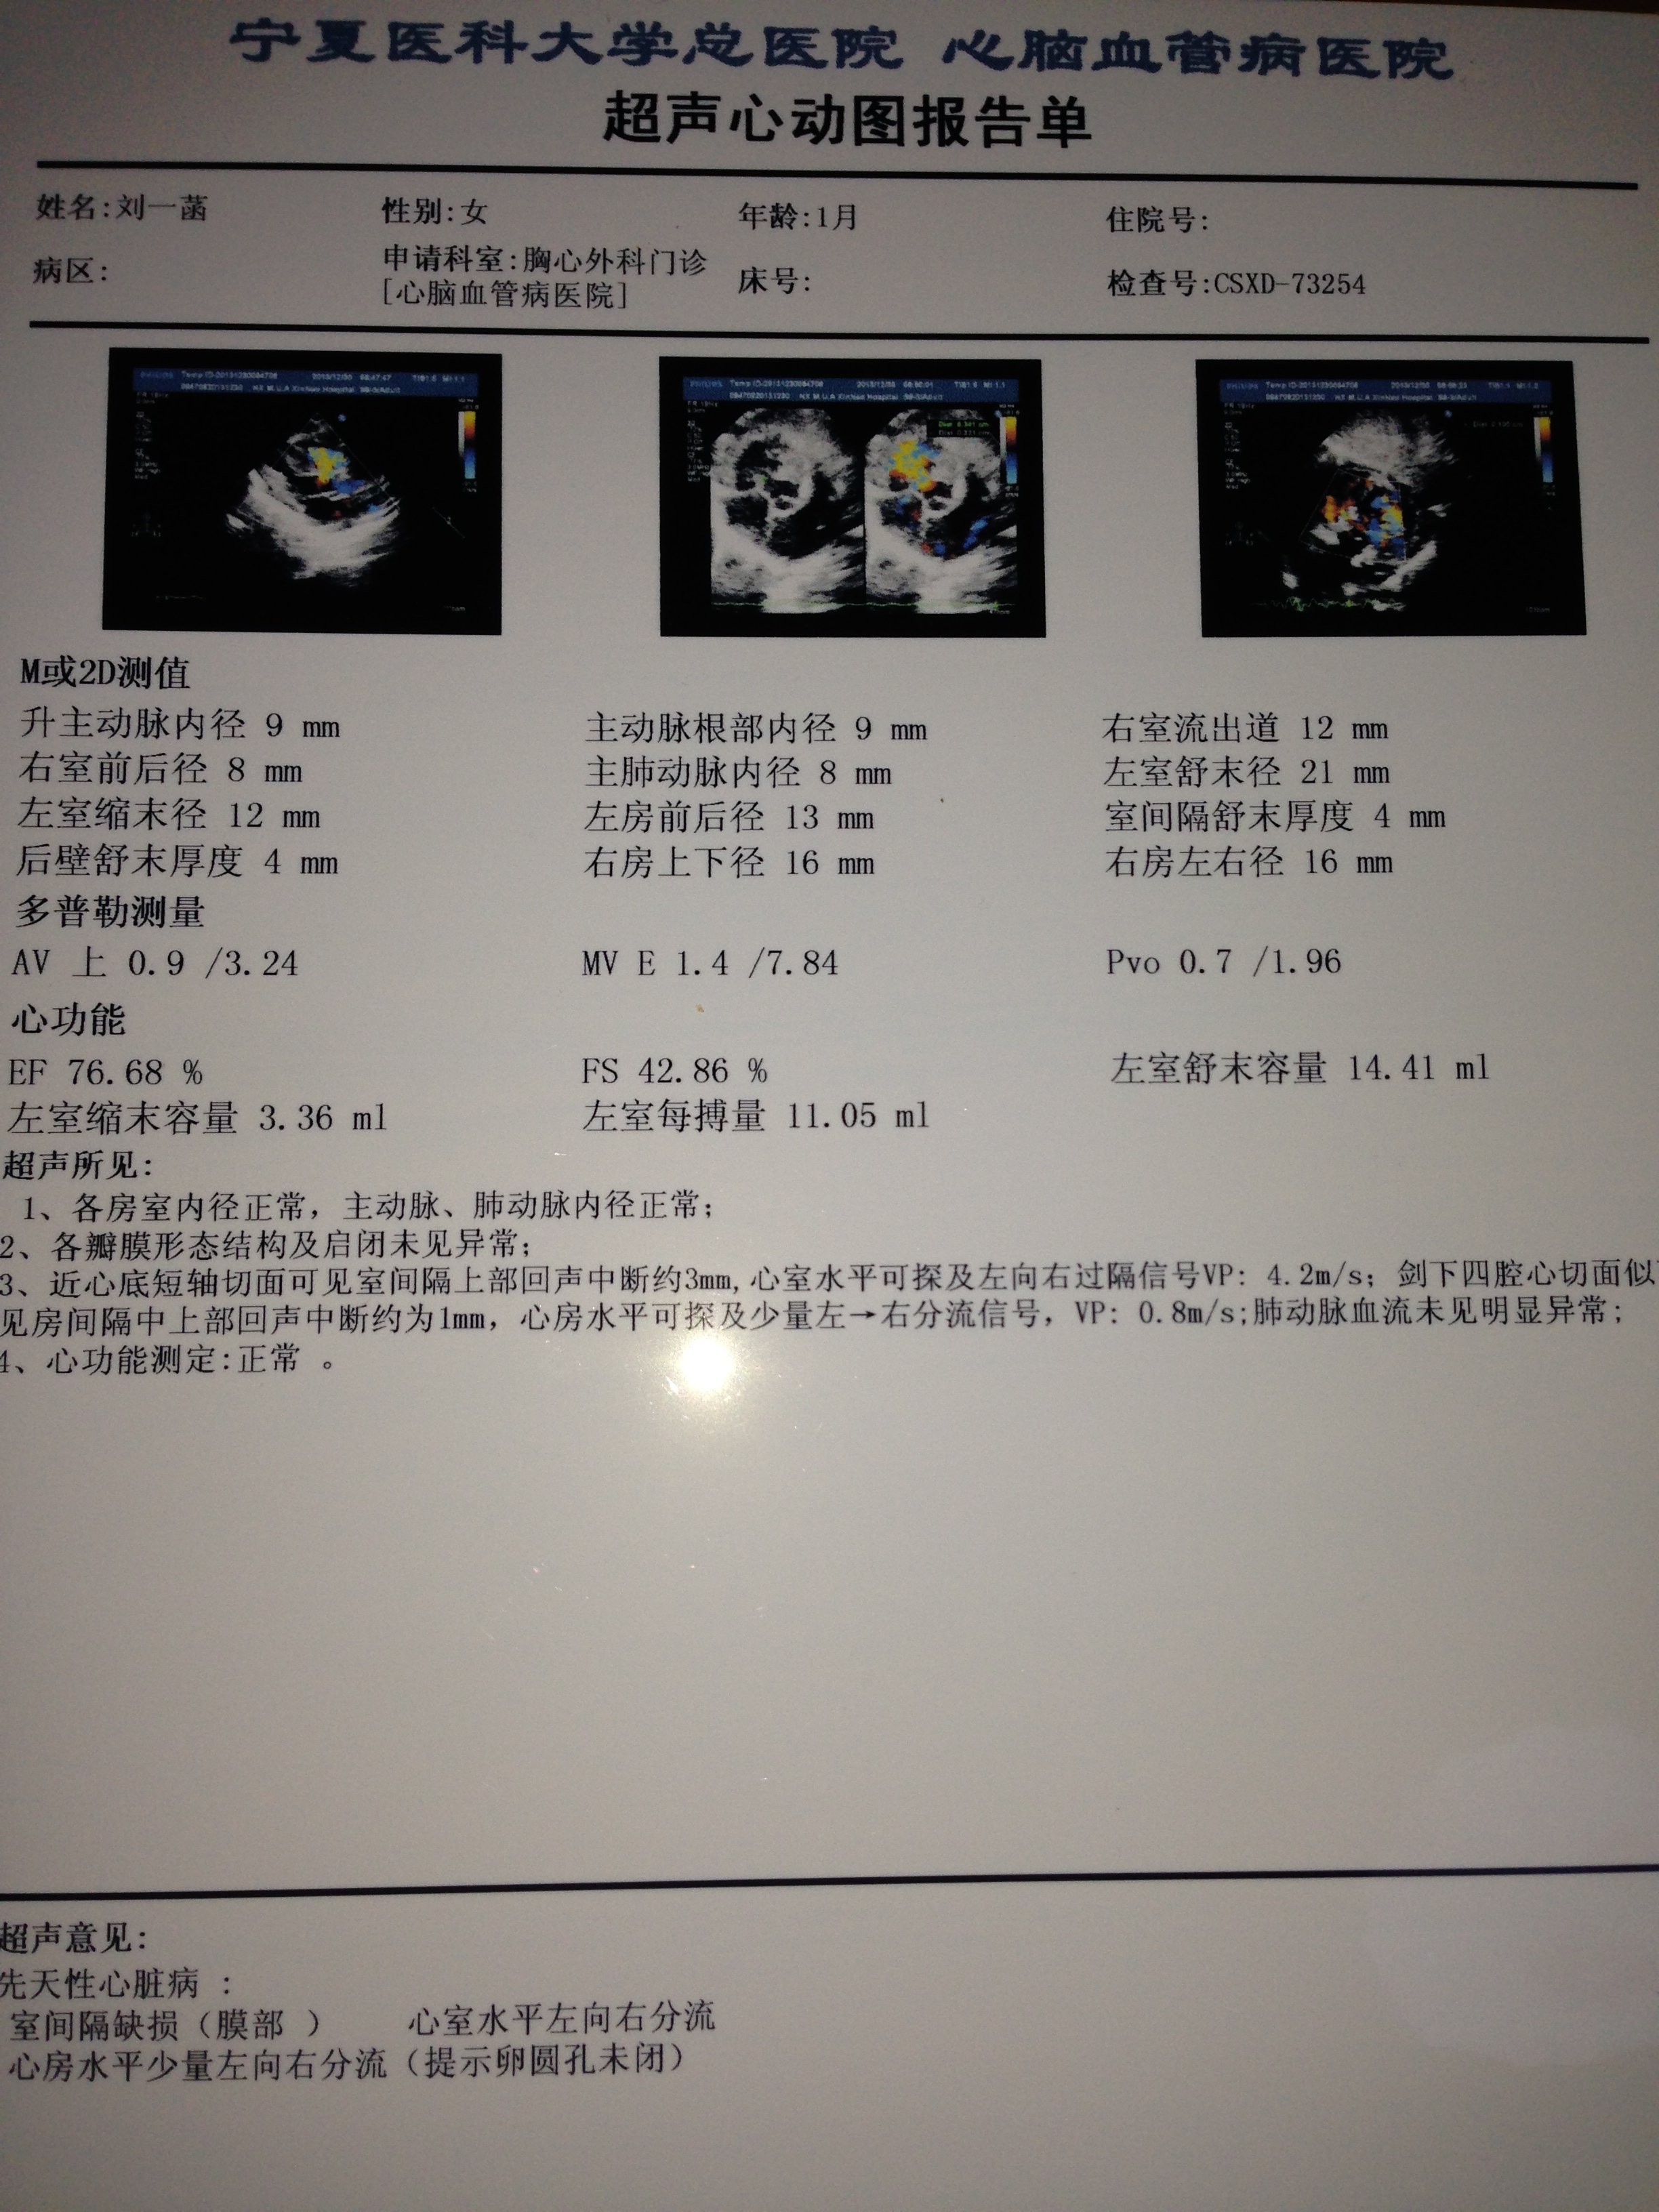 问题:新生儿42天,先心病,室间隔缺损3mm